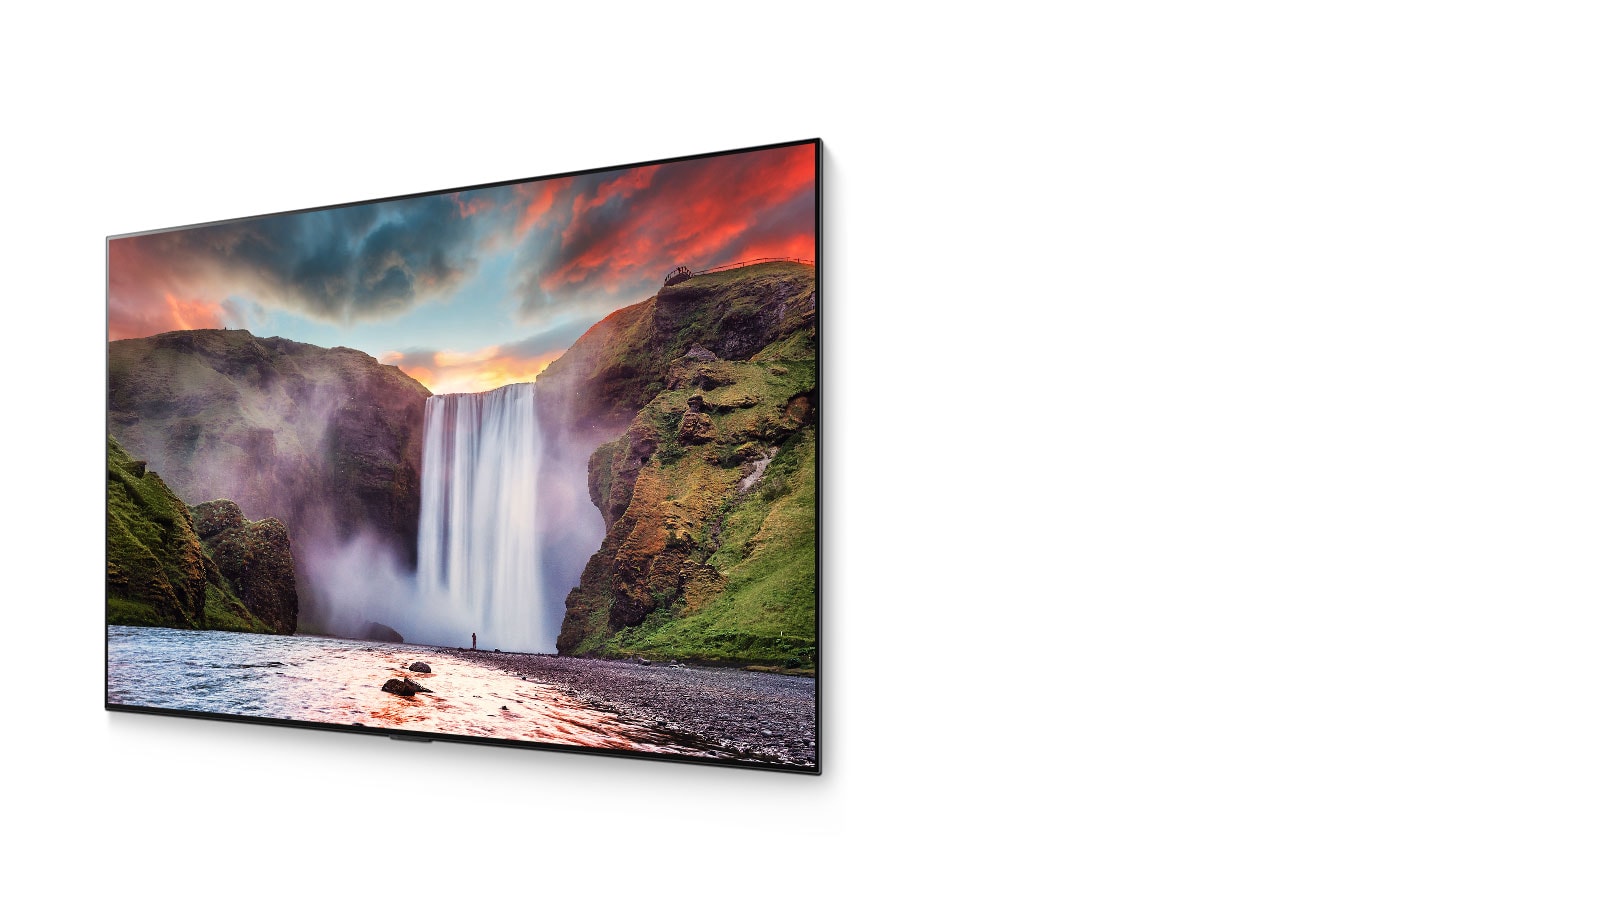 Una spettacolare cascata con un bellissimo paesaggio, mostrata su un TV OLED (guarda il video)